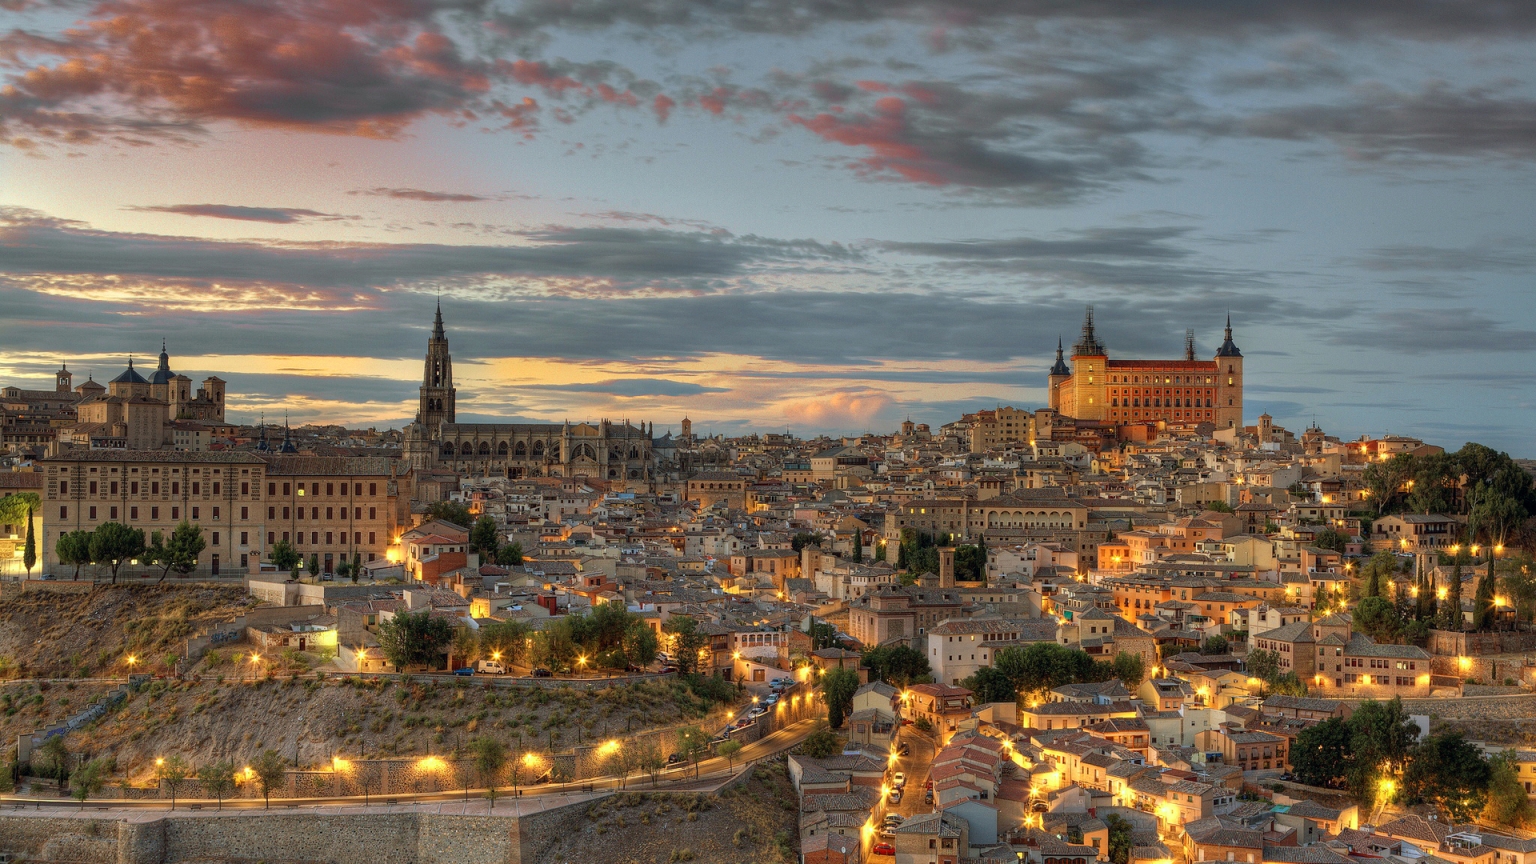 Toledo Spain Landscape for 1536 x 864 HDTV resolution